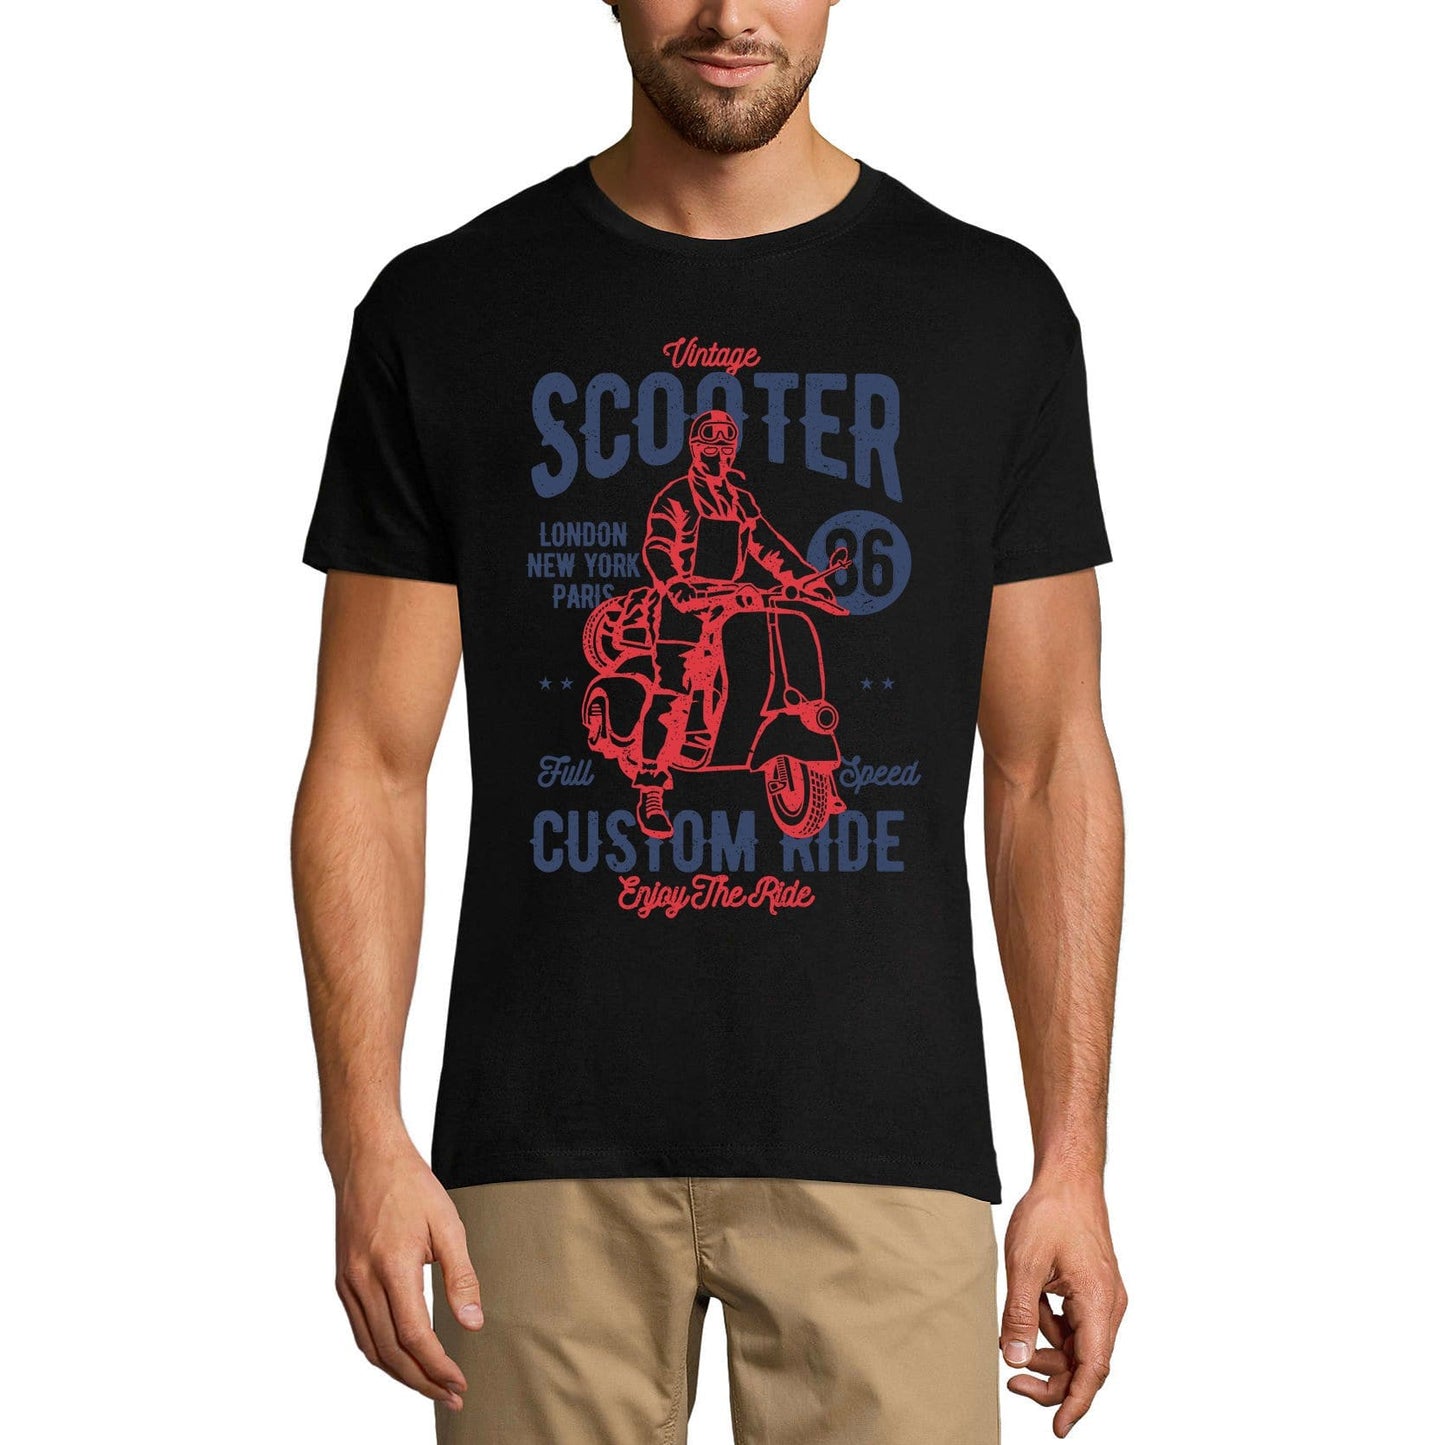 ULTRABASIC Herren Grafik-T-Shirt Vintage Scooter – Custom Ride T-Shirt